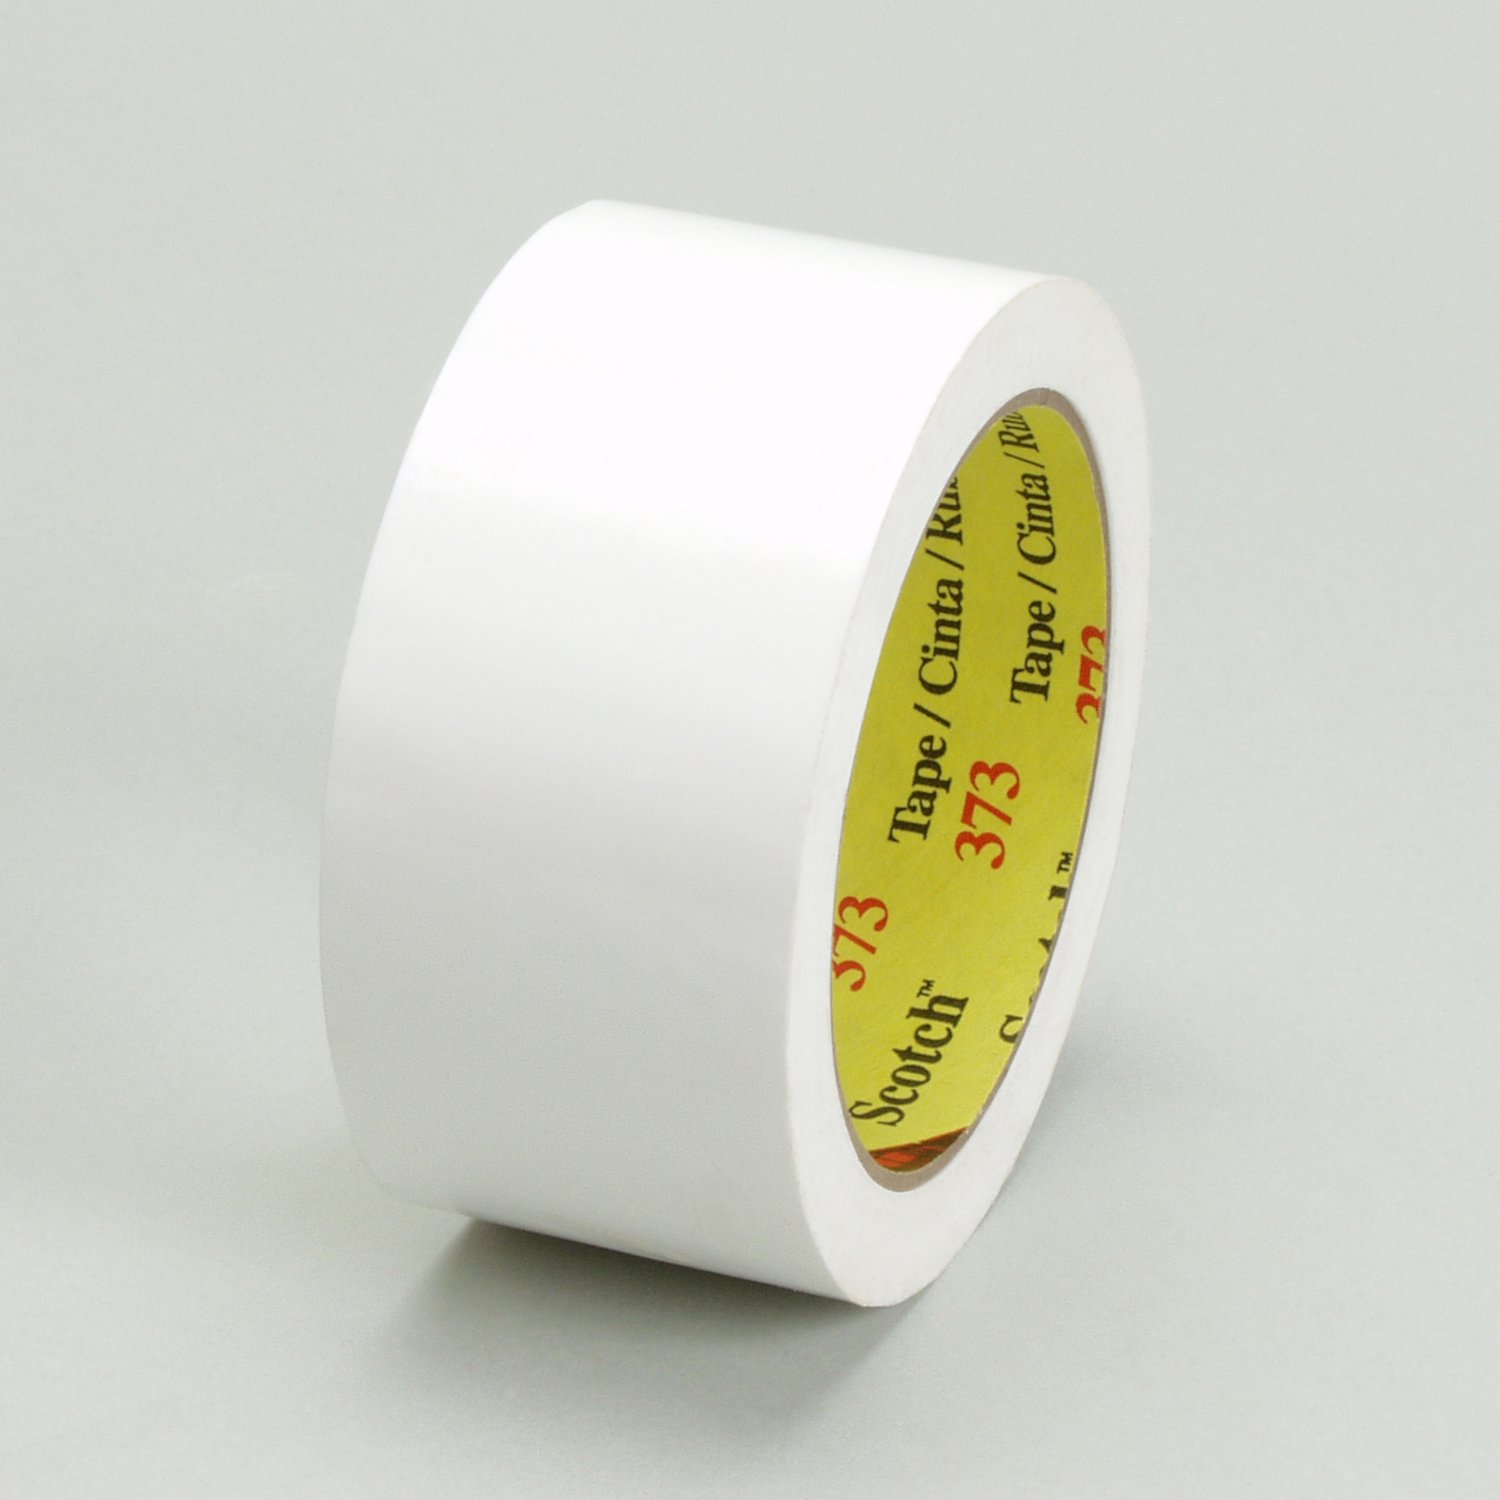 7010312612 - Scotch Box Sealing Tape 373, White, 72 mm x 914 m, 4/Case